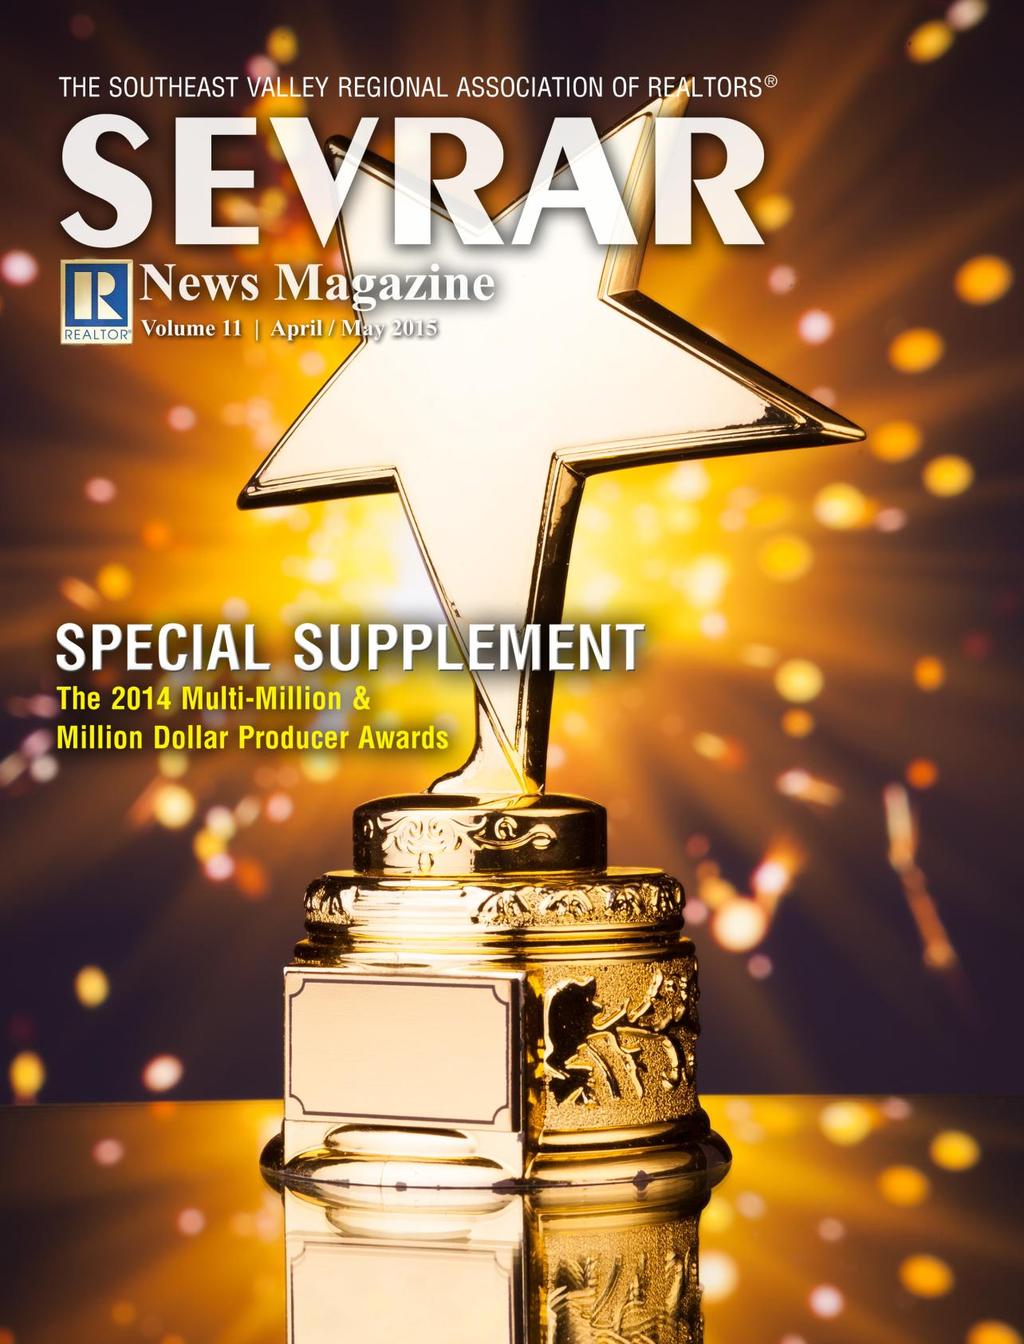 SEVRAR News Magazine